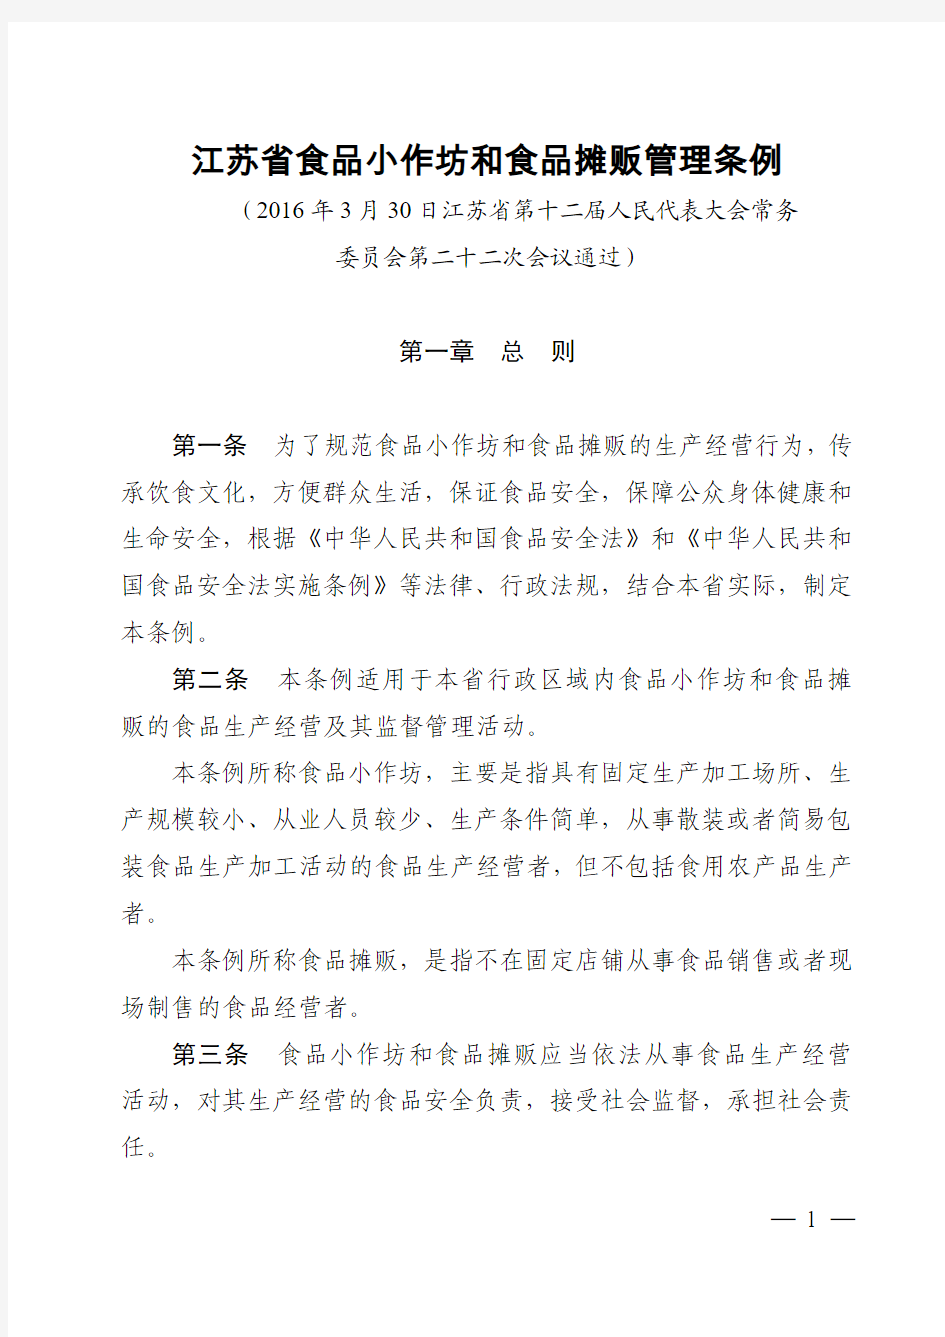 江苏省食品小作坊和食品摊贩管理条例